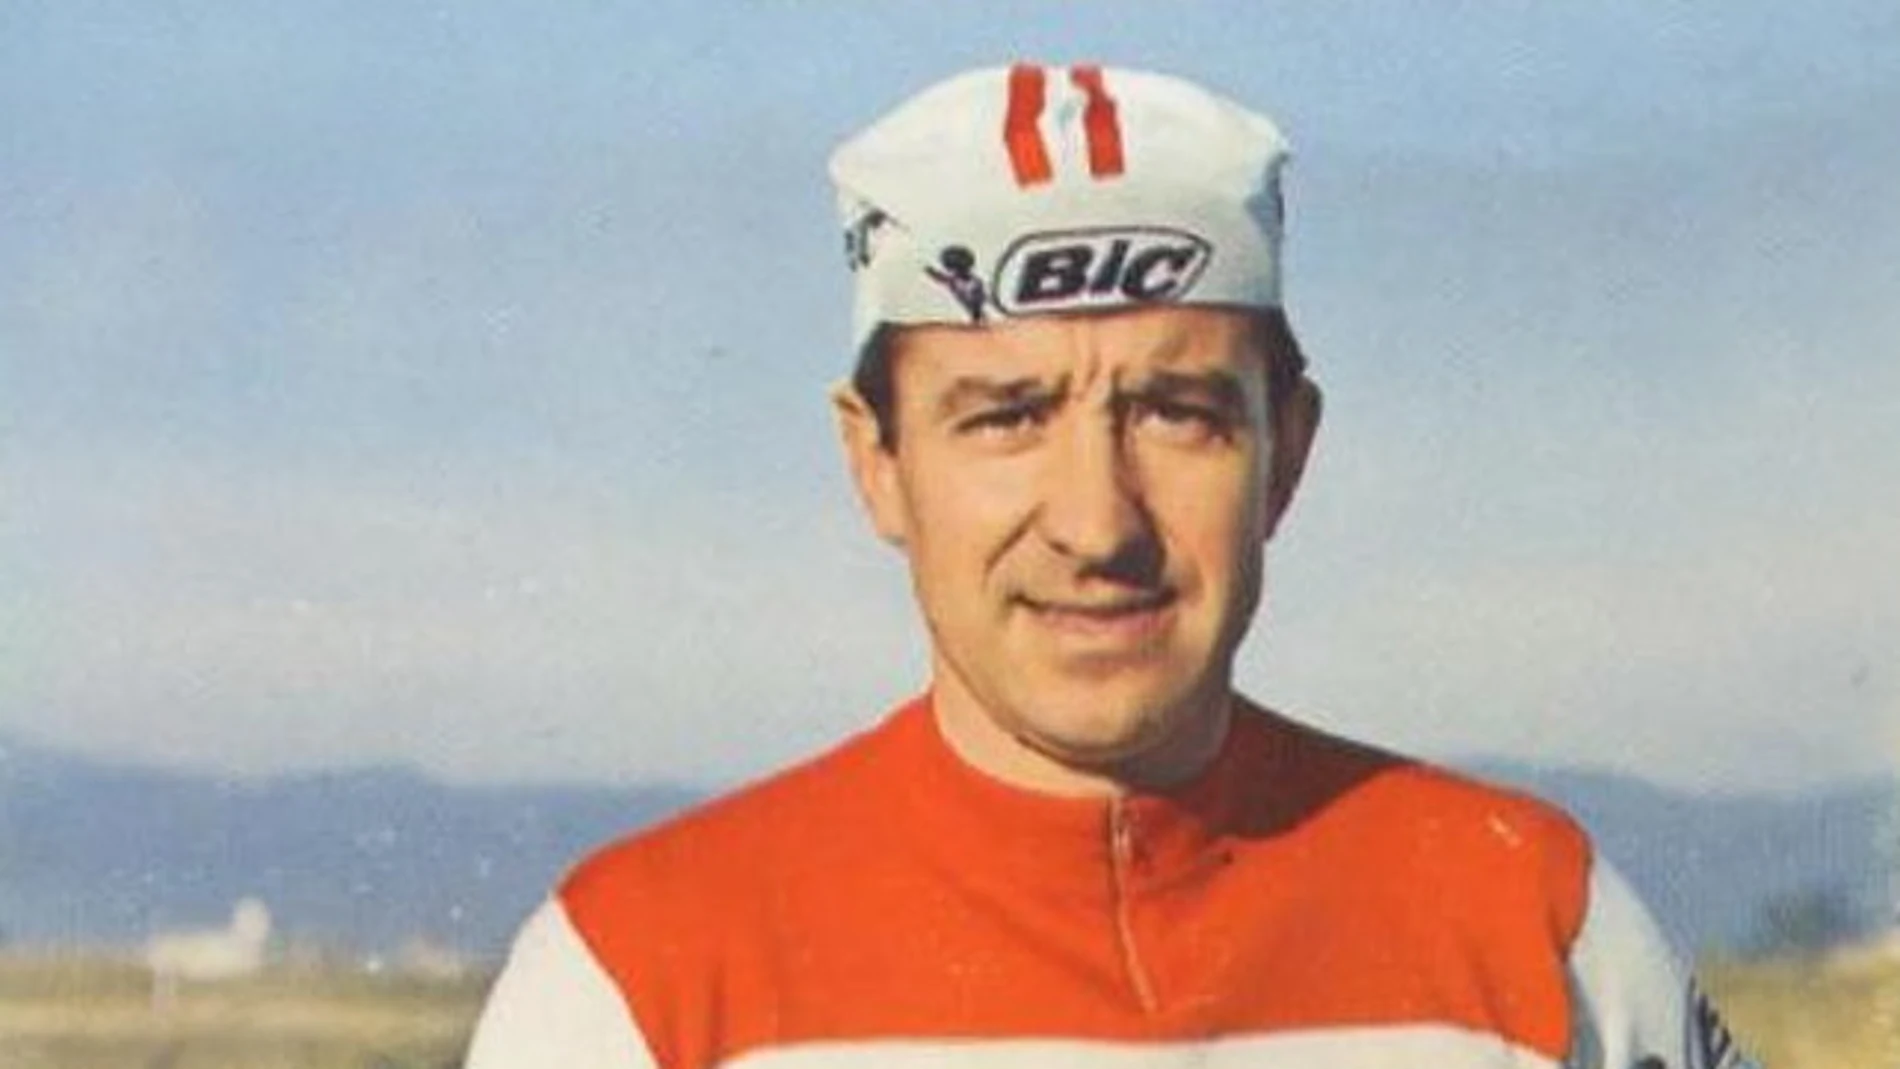 Julio Jiménez, con el maillot del Bic